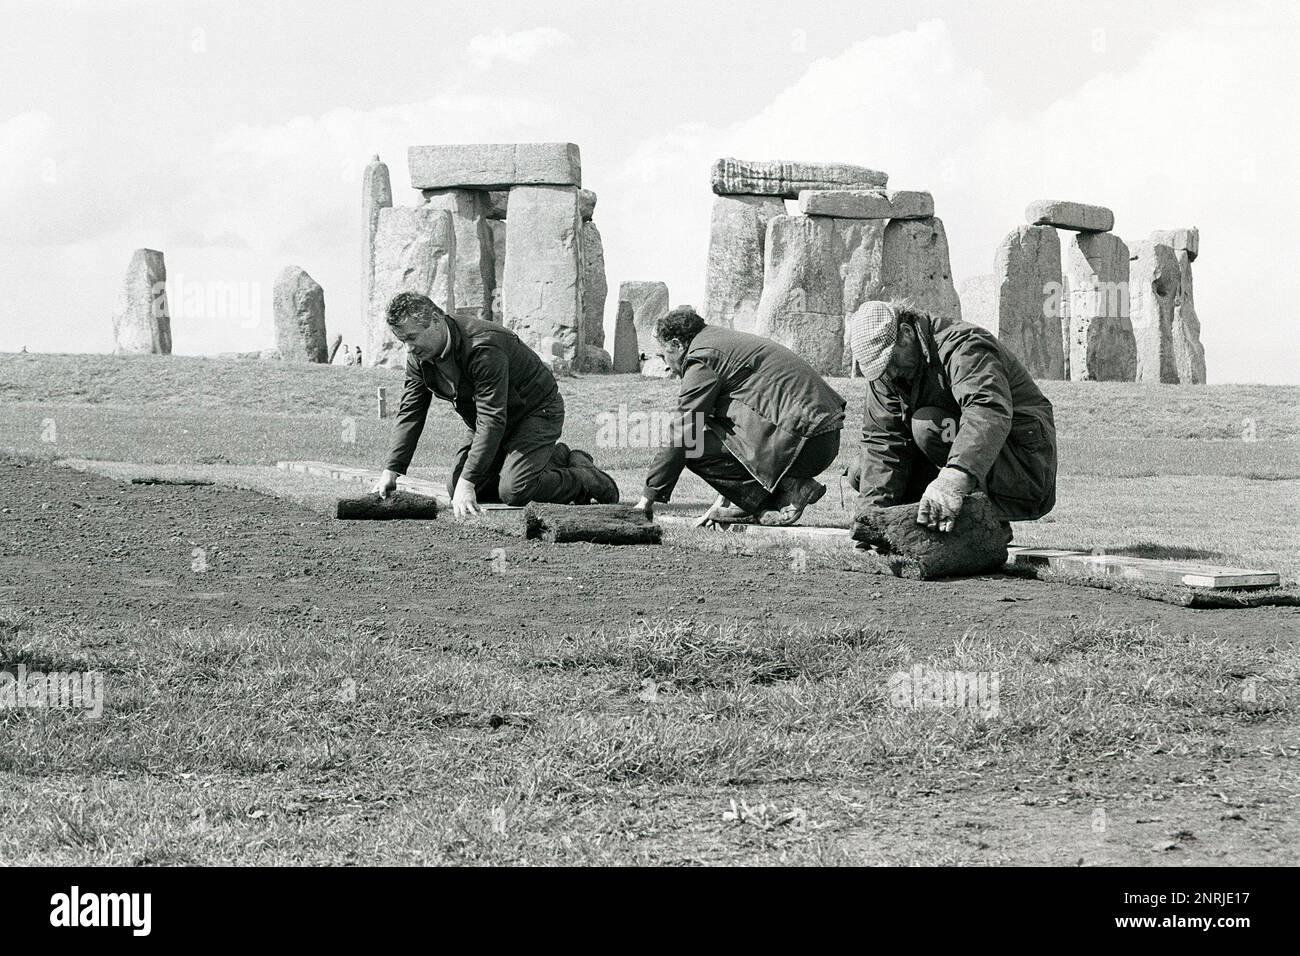 Archivbild des Rasenlagers in der Weltkulturerbestätte Stonehenge, ca. 1990. Stockfoto